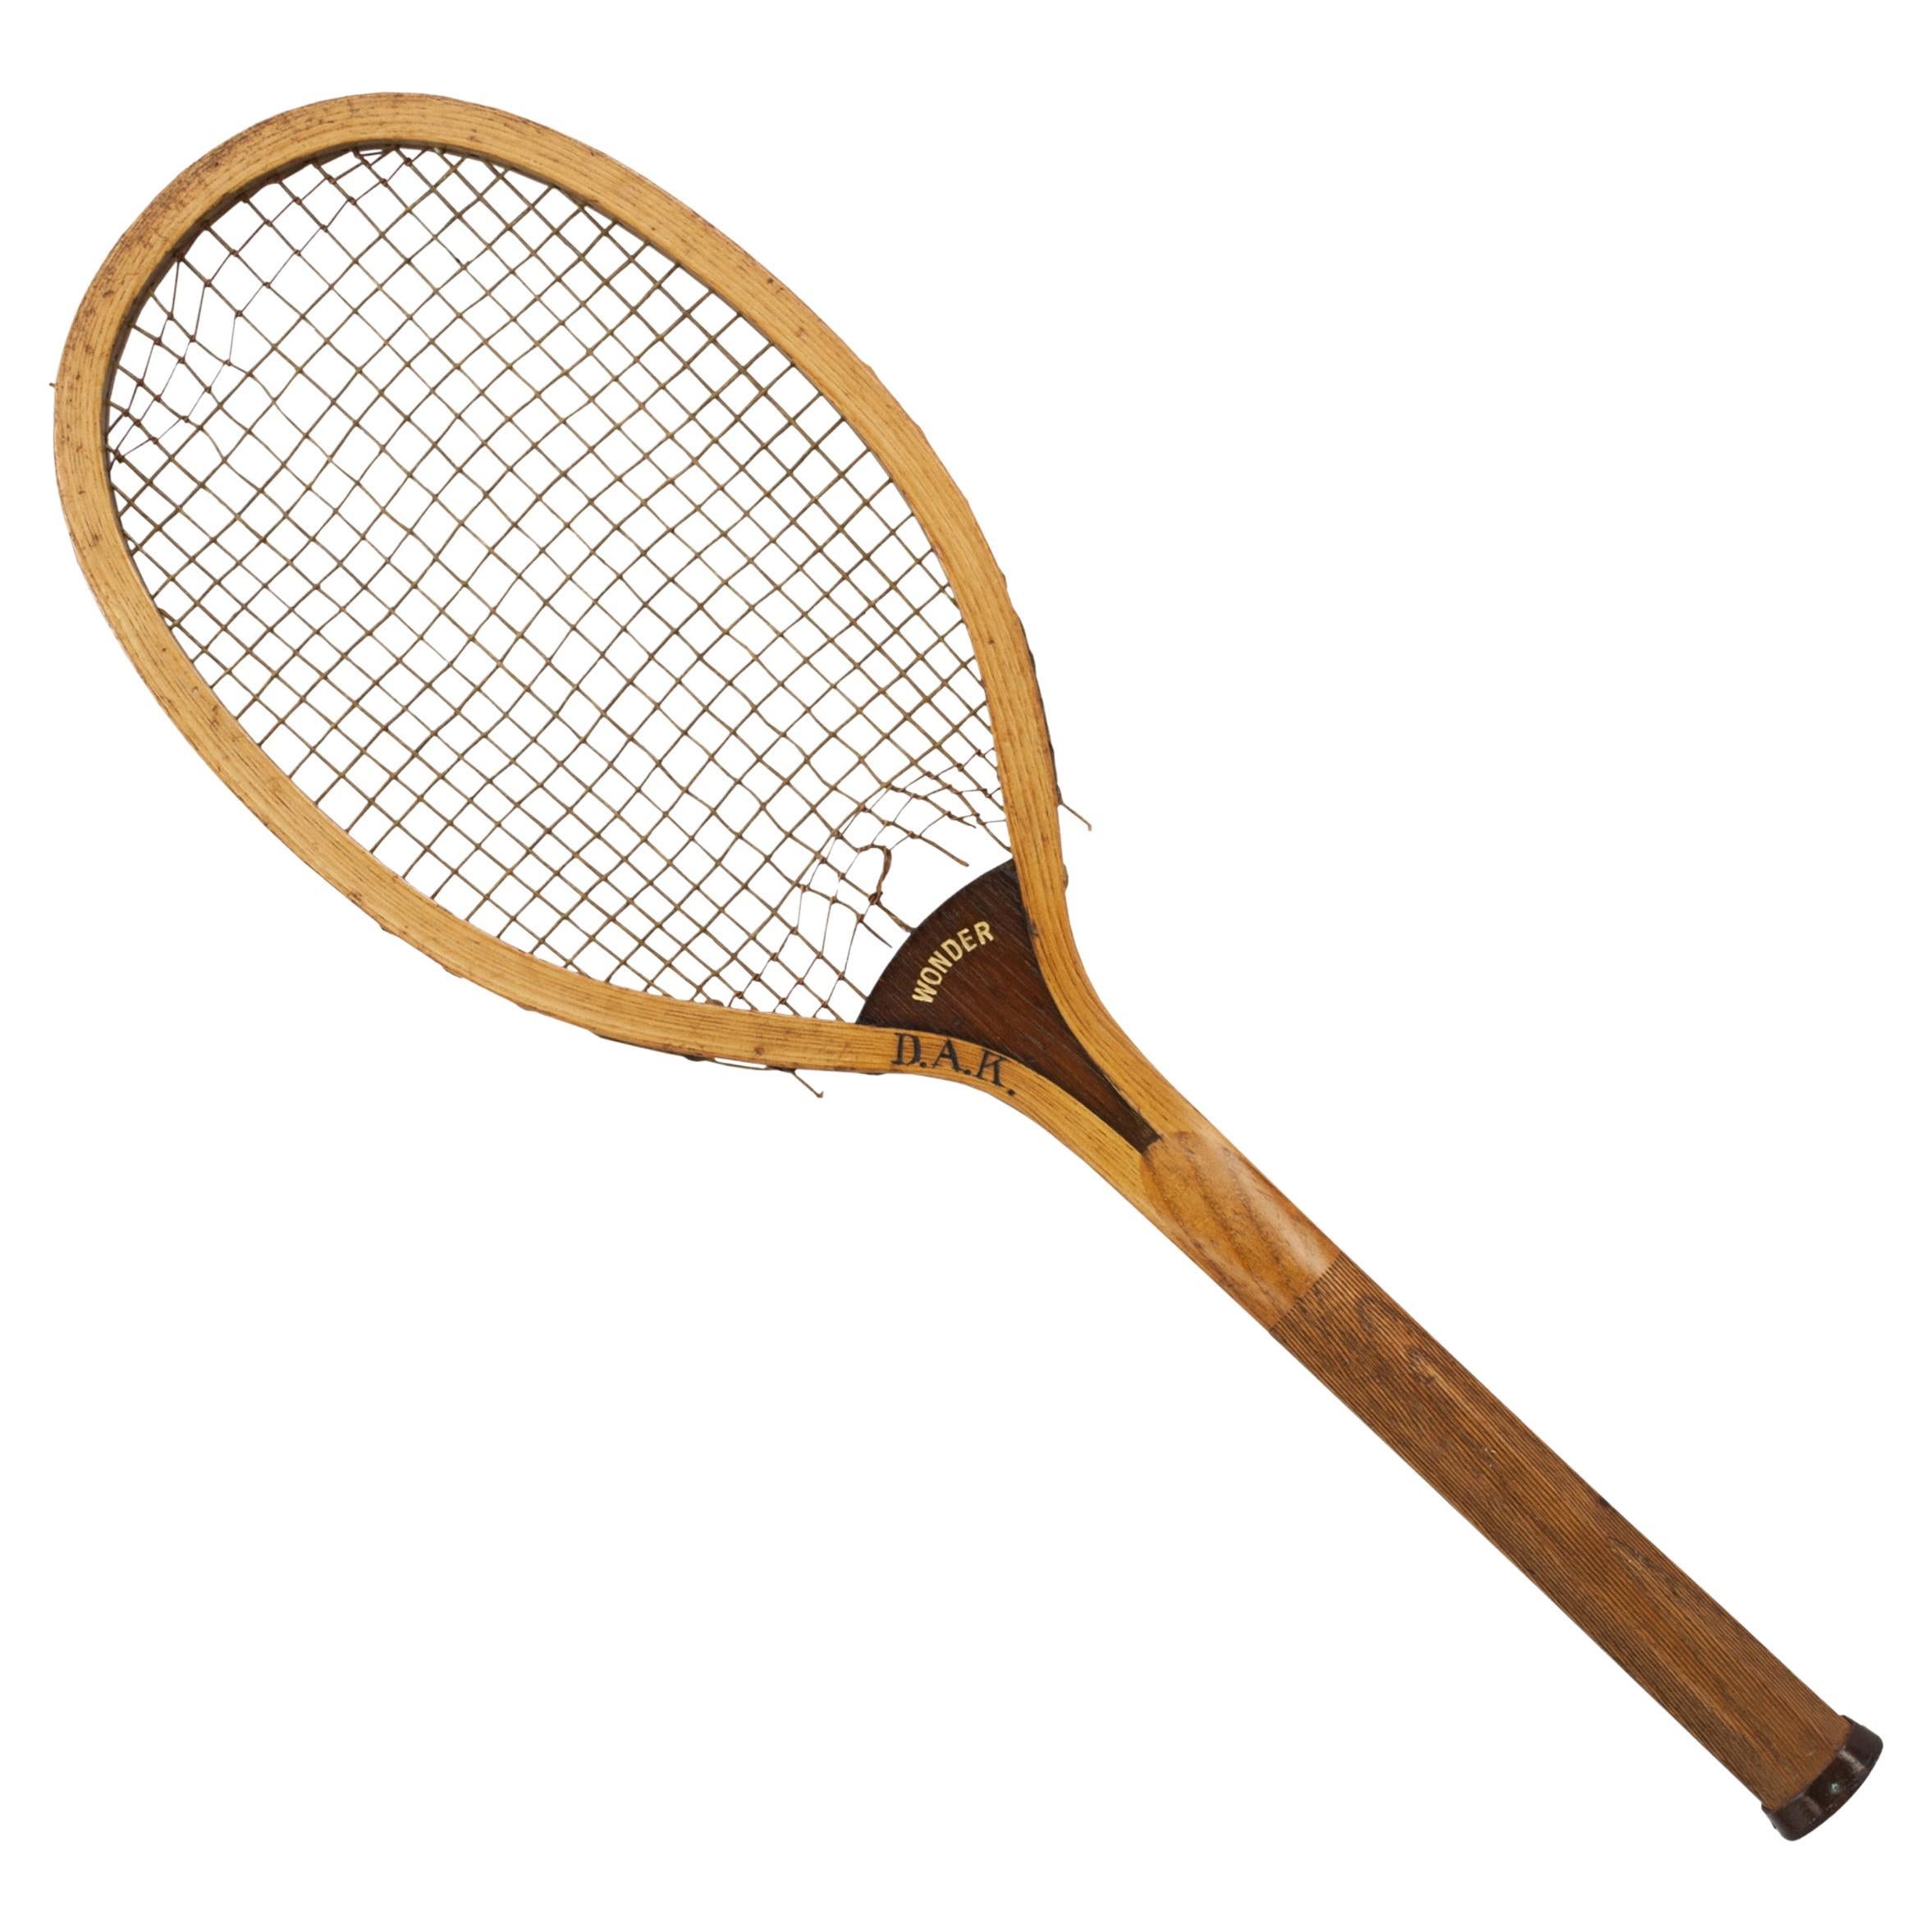 Wooden Lawn Tennis Racket, Wonder